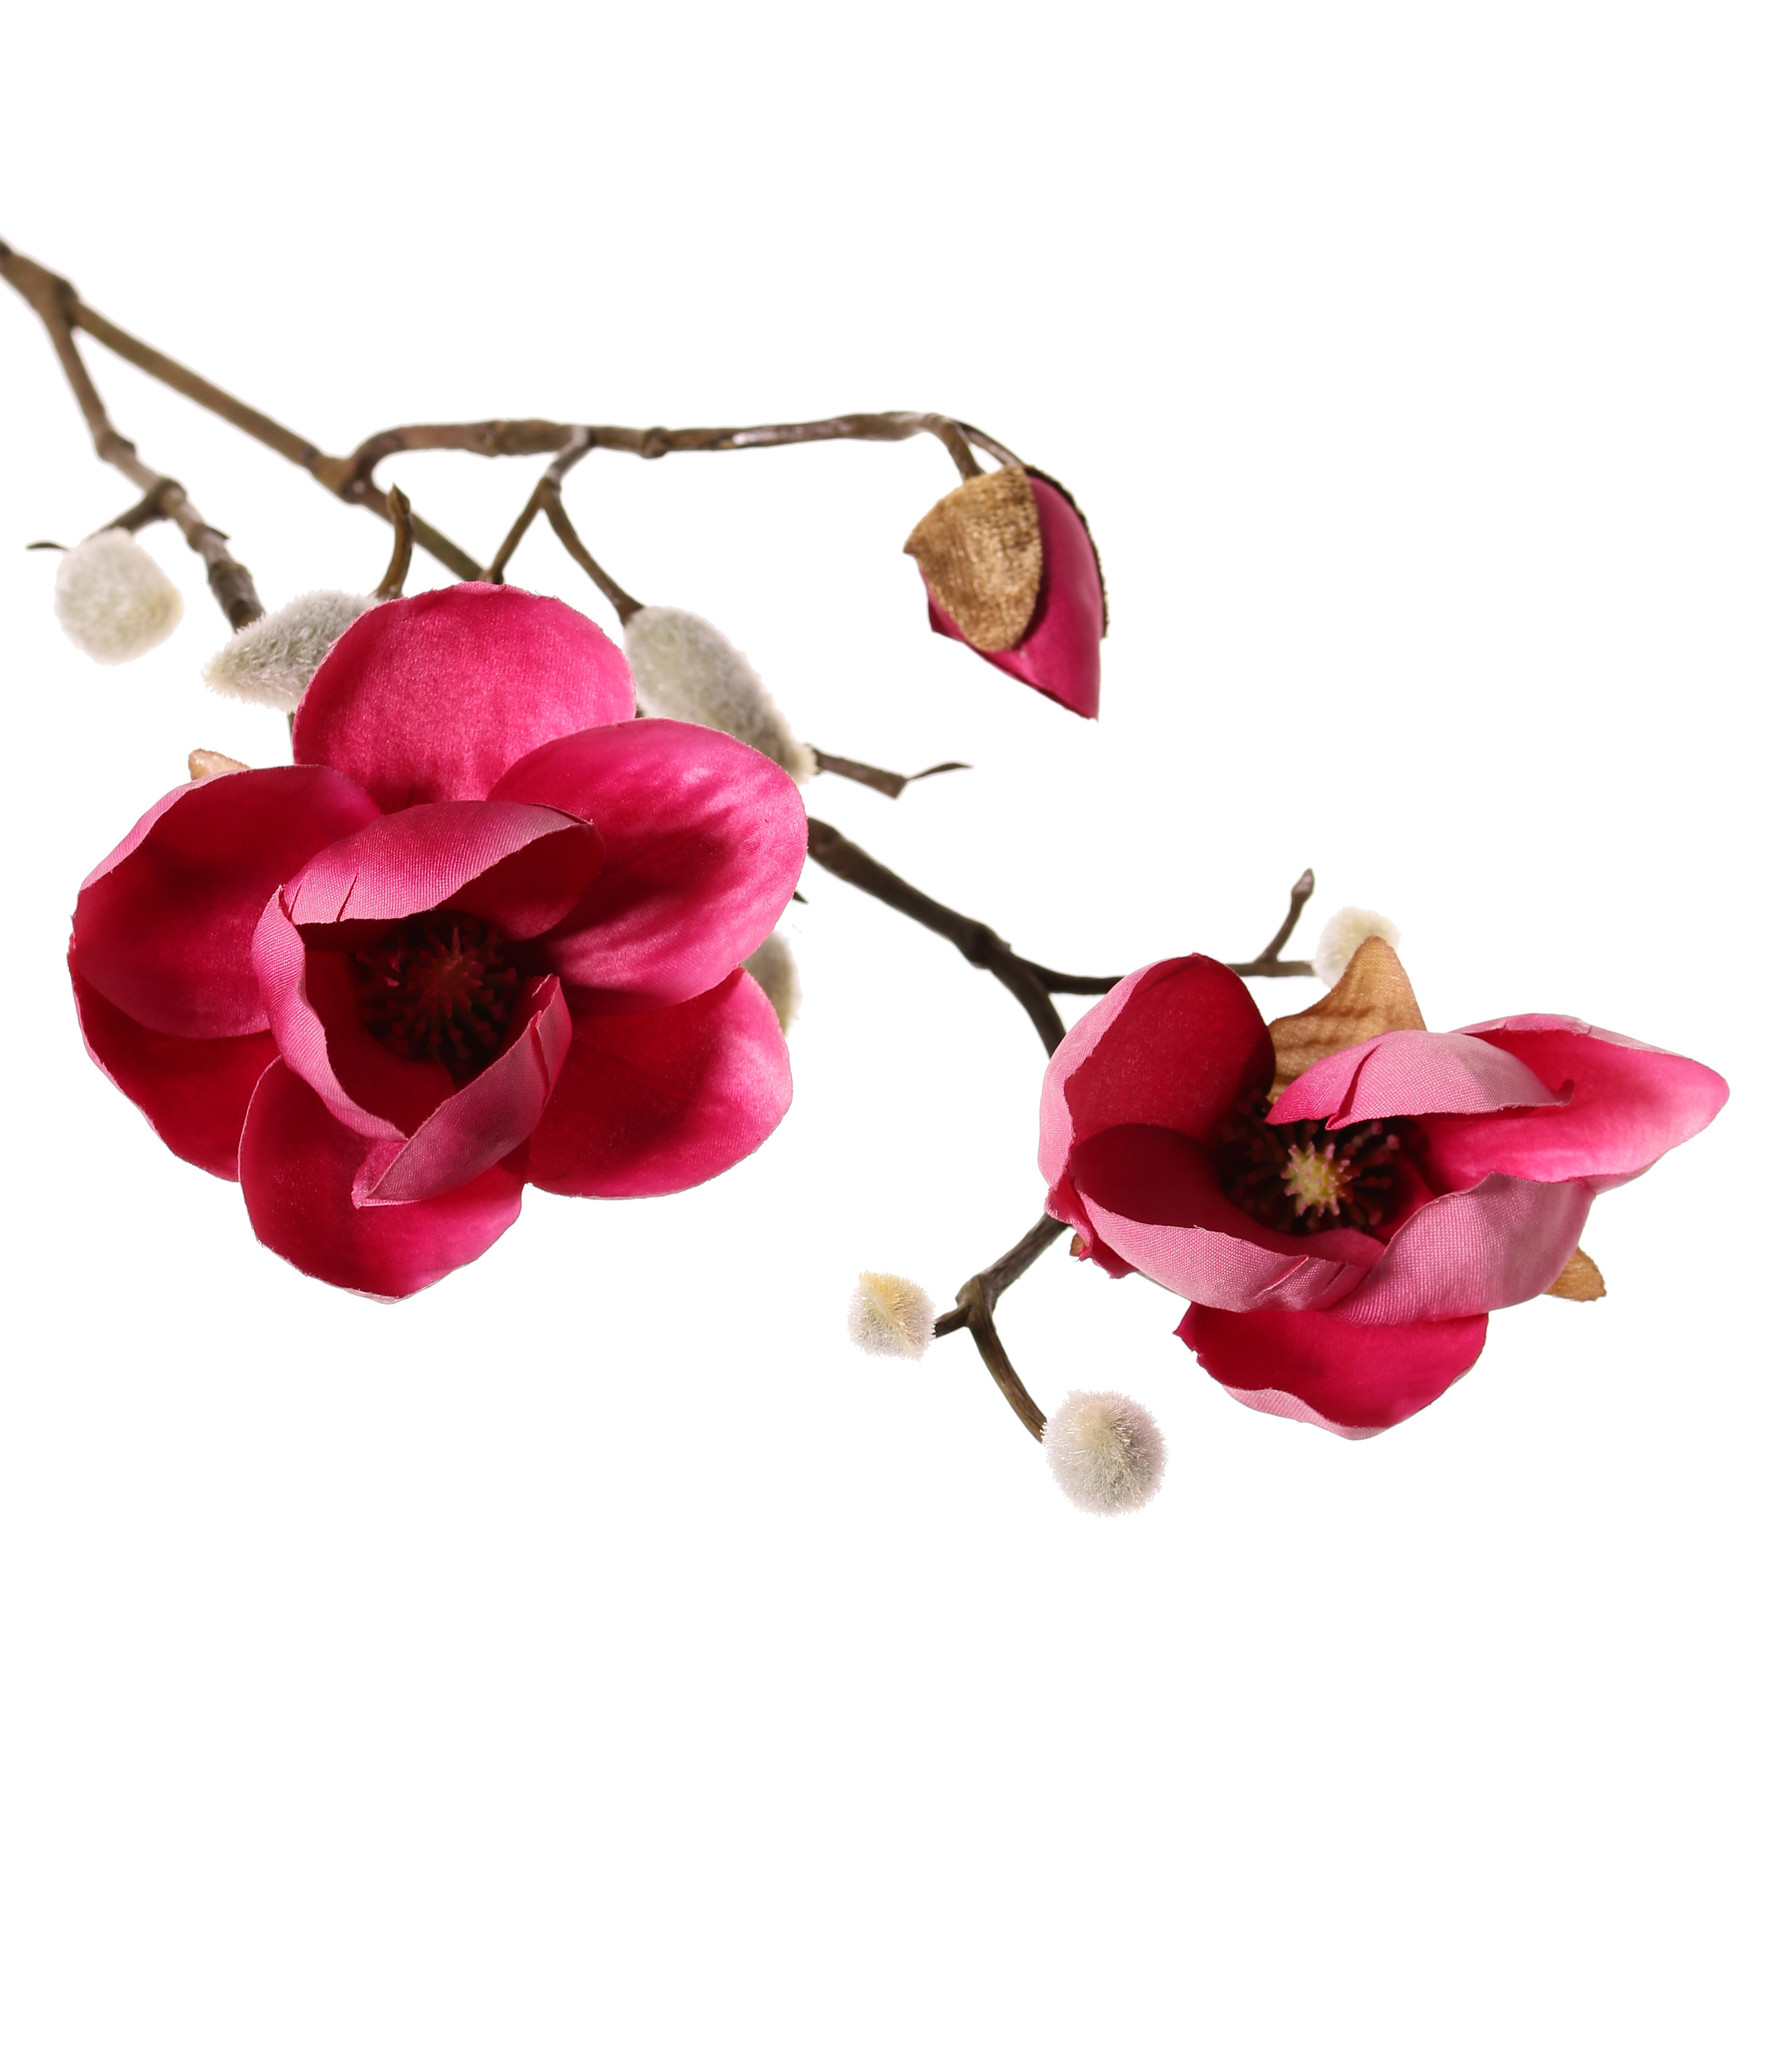 Magnolien-Zweig mit 3 Verzweigungen, 2 Blumen, (Ø 8 & 5 cm), 8 Knospen, 53 cm